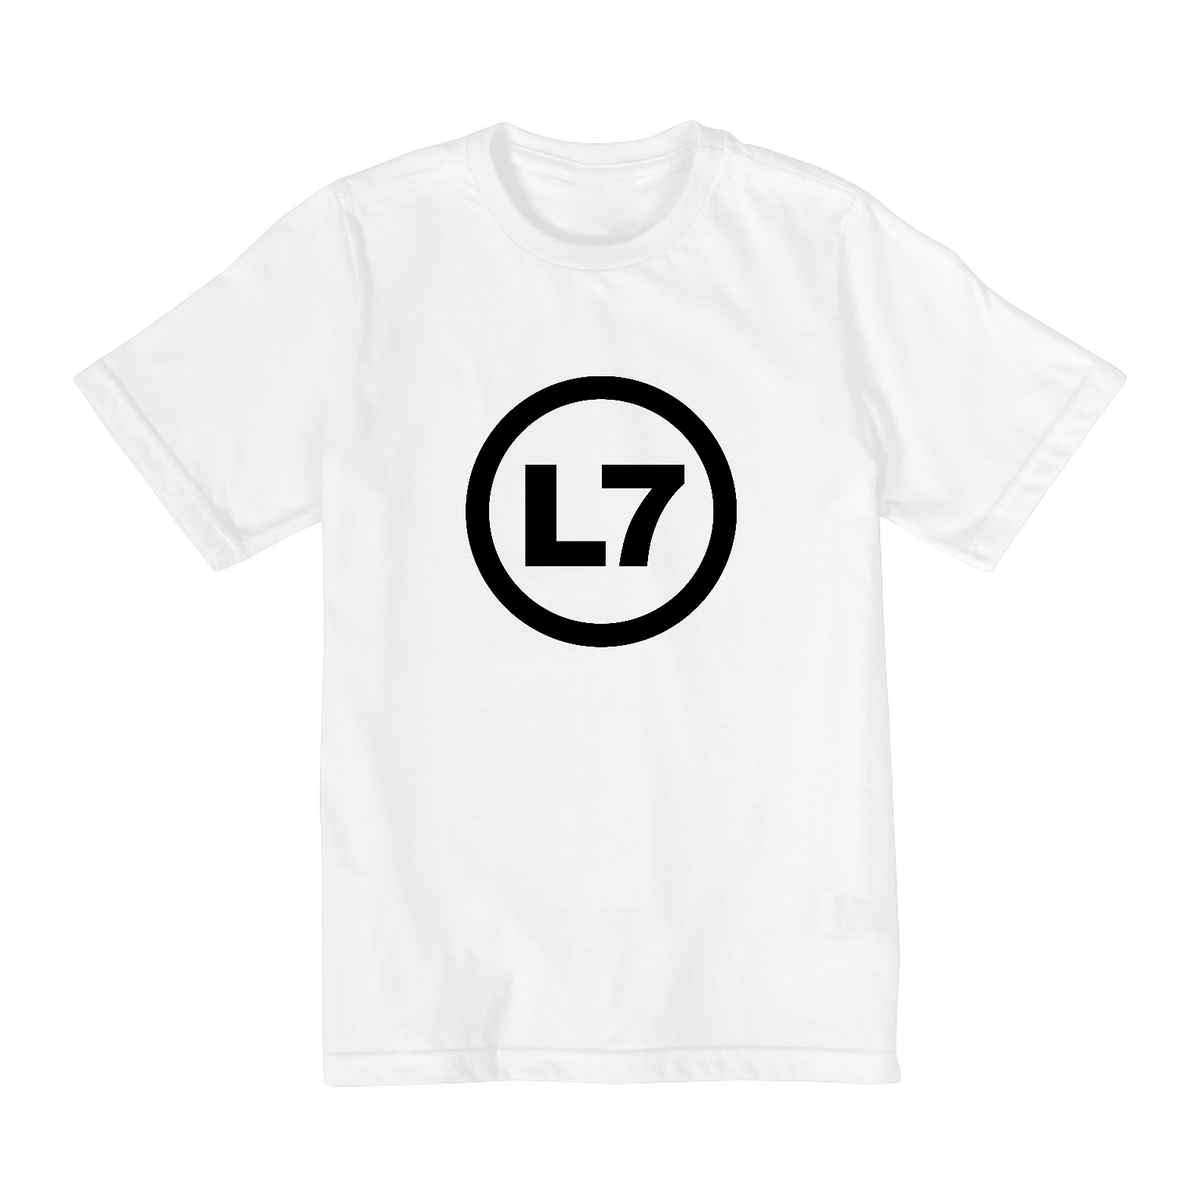 Nome do produto: Camiseta Infantil 10 a 14 anos - Bandas - L7